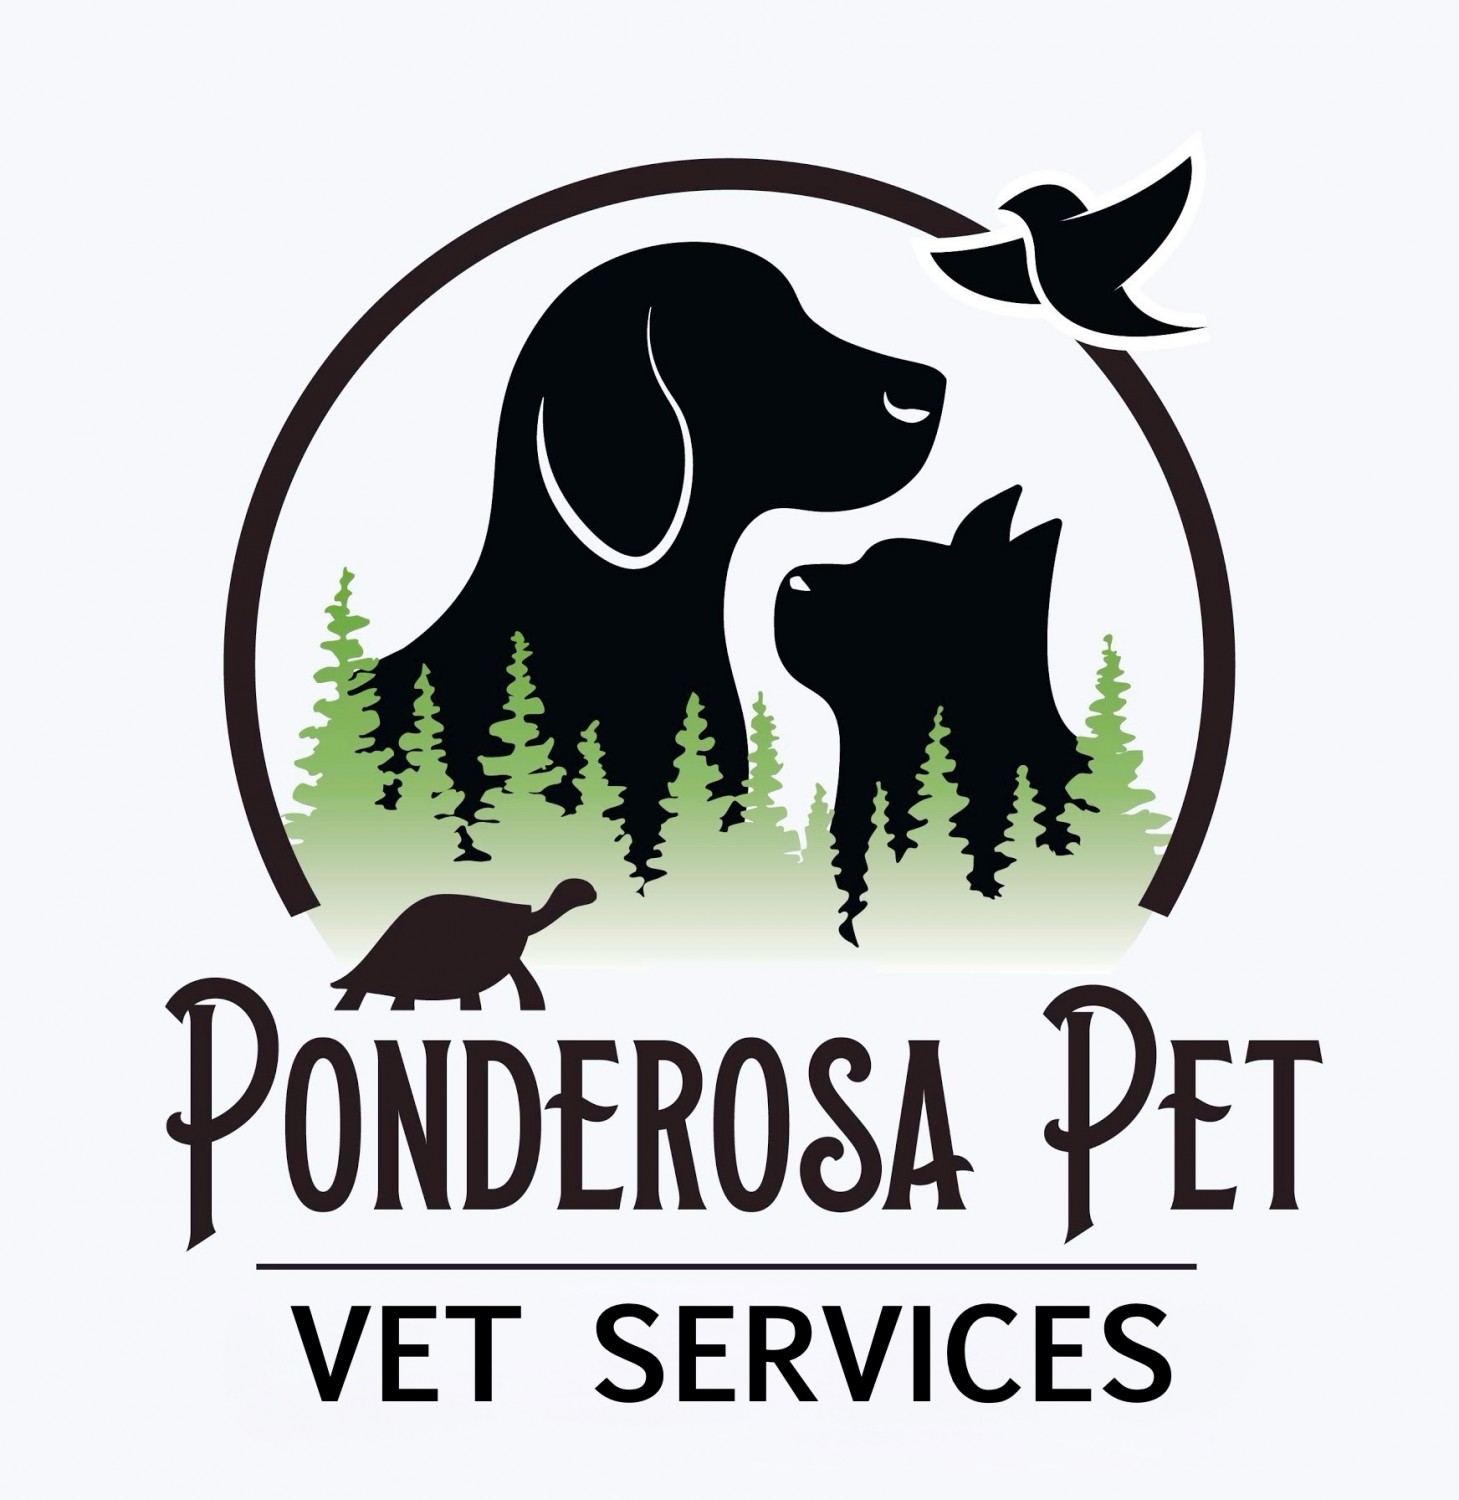 Ponderosa Pet Vet Services